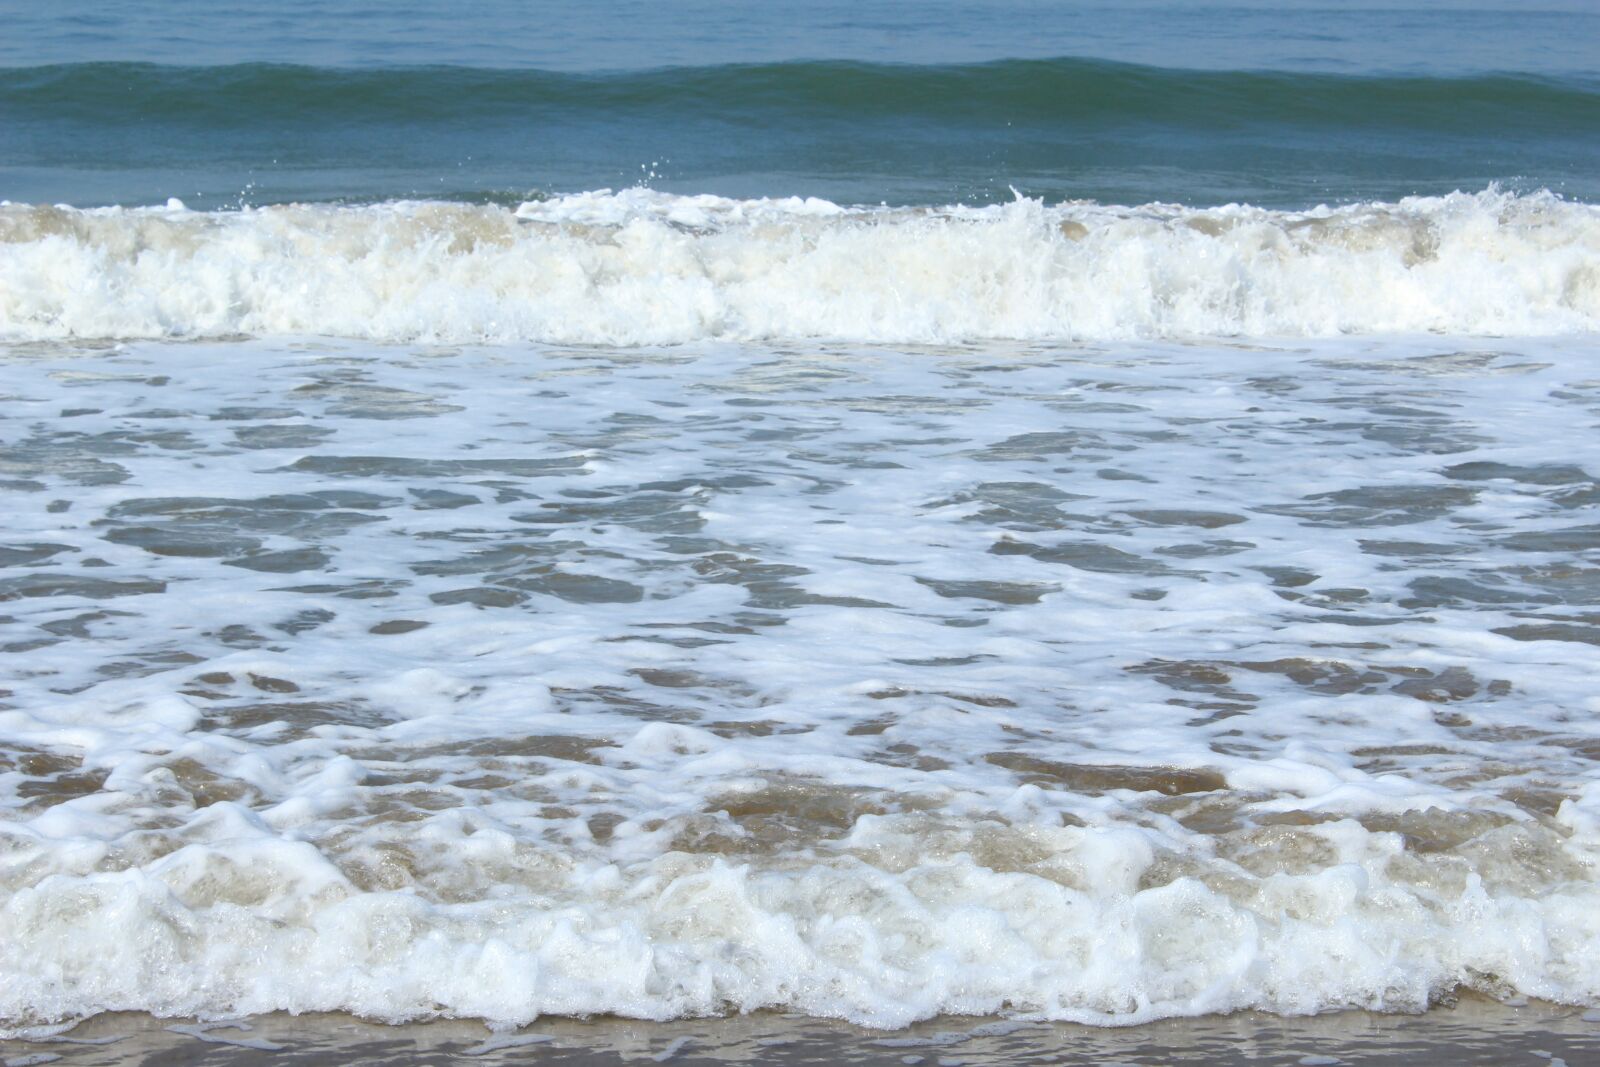 Canon EOS 1200D (EOS Rebel T5 / EOS Kiss X70 / EOS Hi) sample photo. Sea, waves, ocean photography